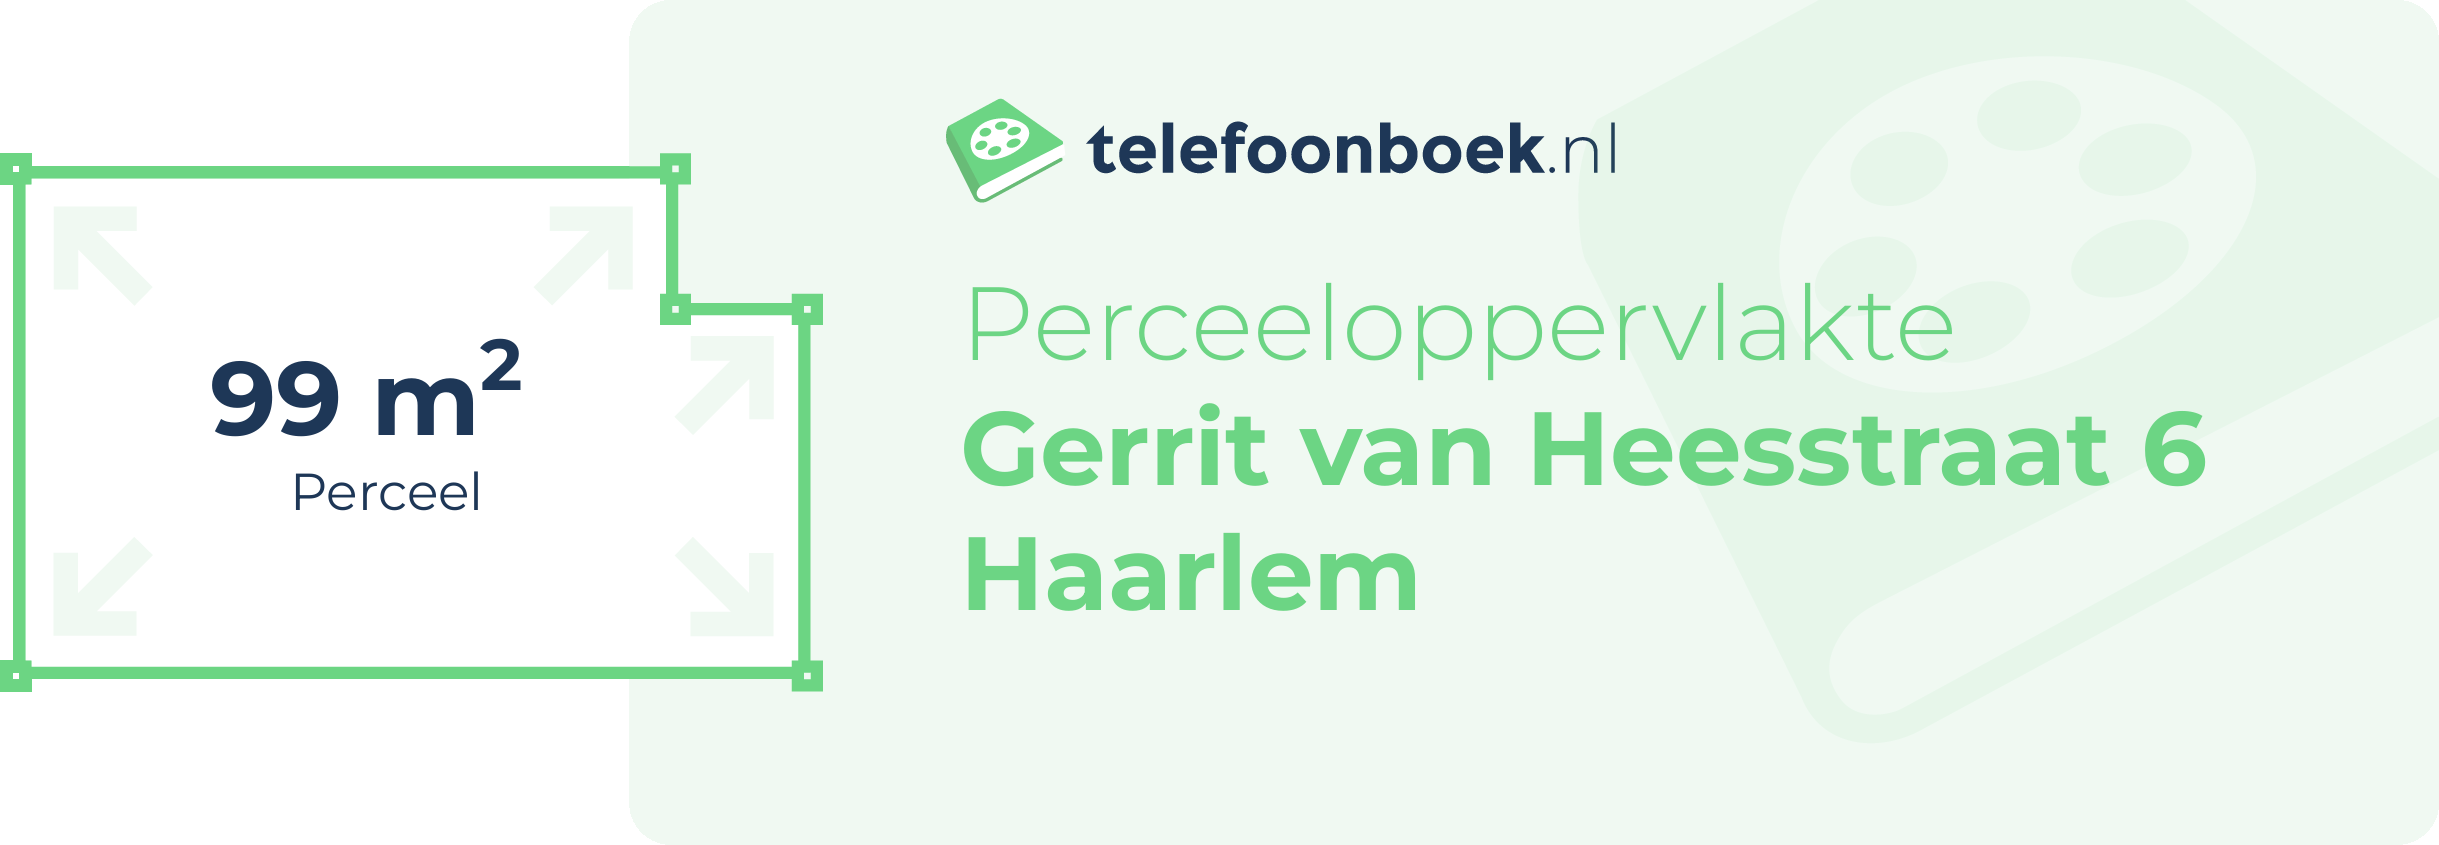 Perceeloppervlakte Gerrit Van Heesstraat 6 Haarlem